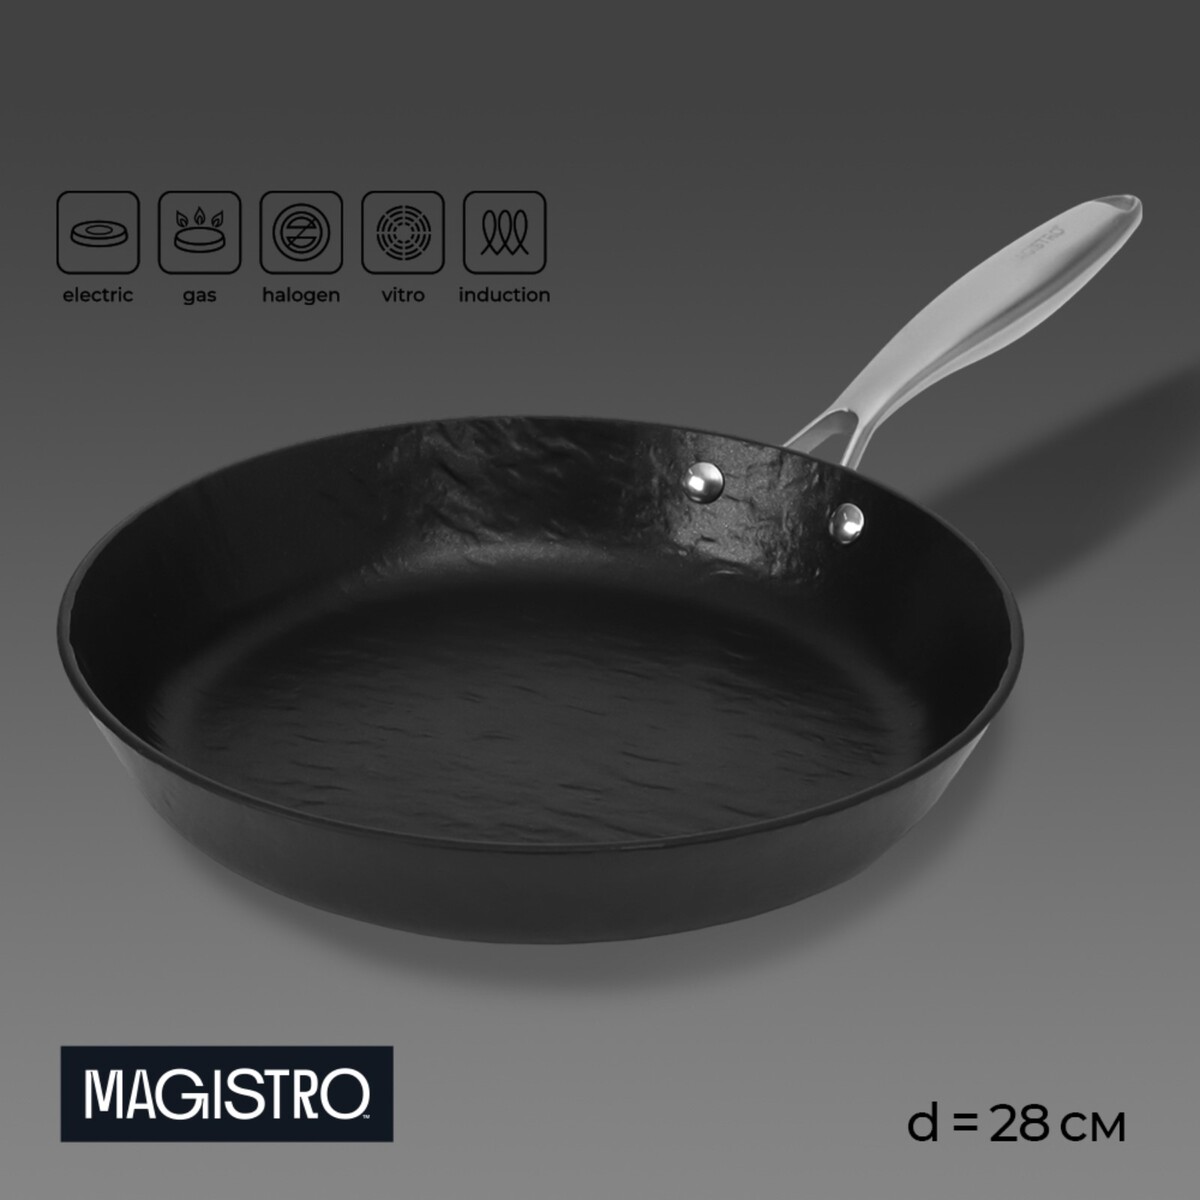 Сковорода magistro rock stone, d=28 см, h=5 см, антипригарное покрытие, индукция, цвет черный